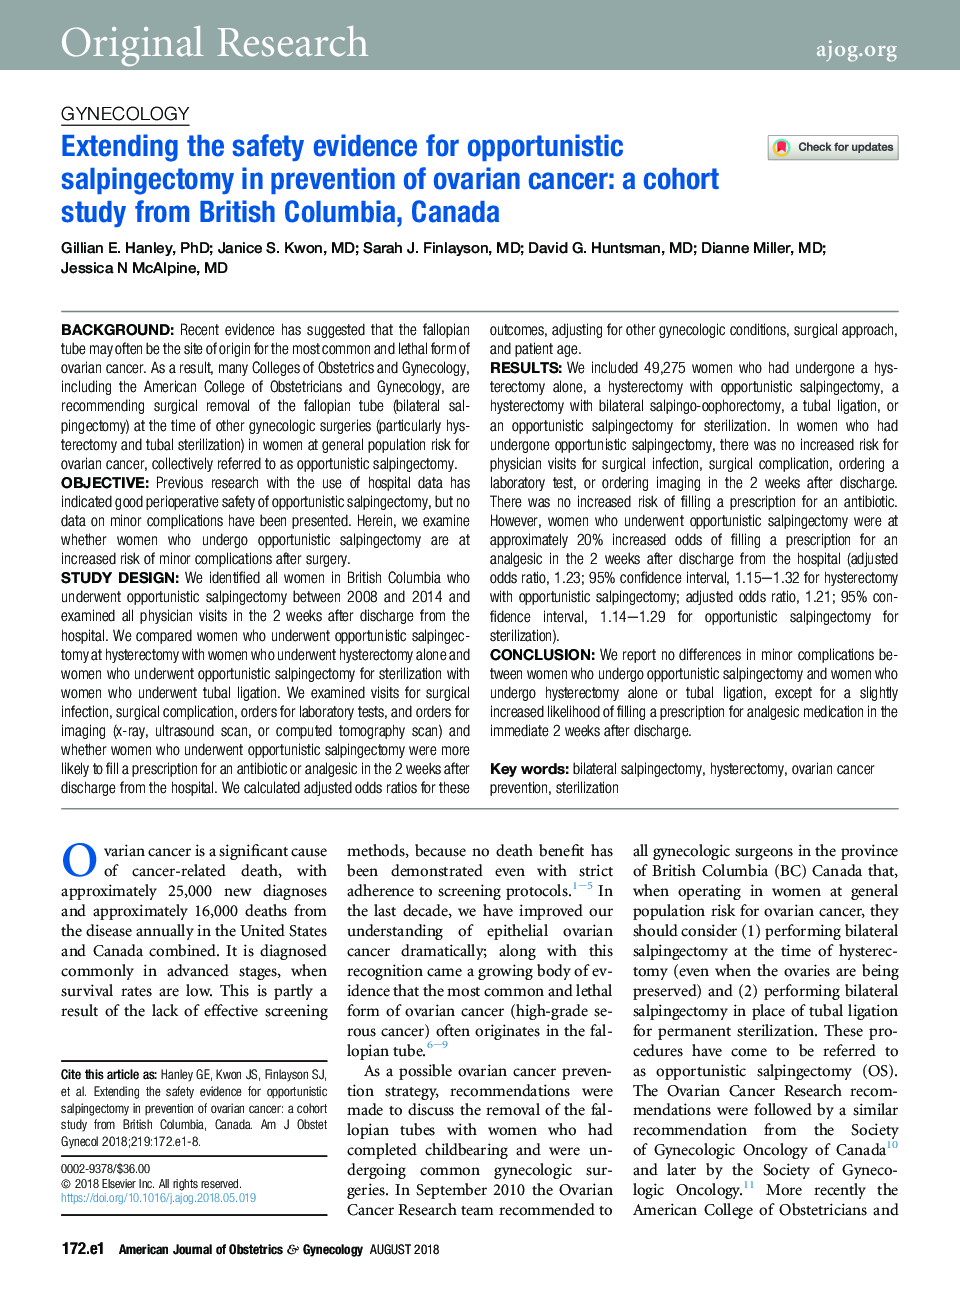 گسترش شواهد ایمنی برای سالپینکتومی فرصتطلبانه در پیشگیری از سرطان تخمدان: مطالعه کوهورت از بریتیش کلمبیا، کانادا 